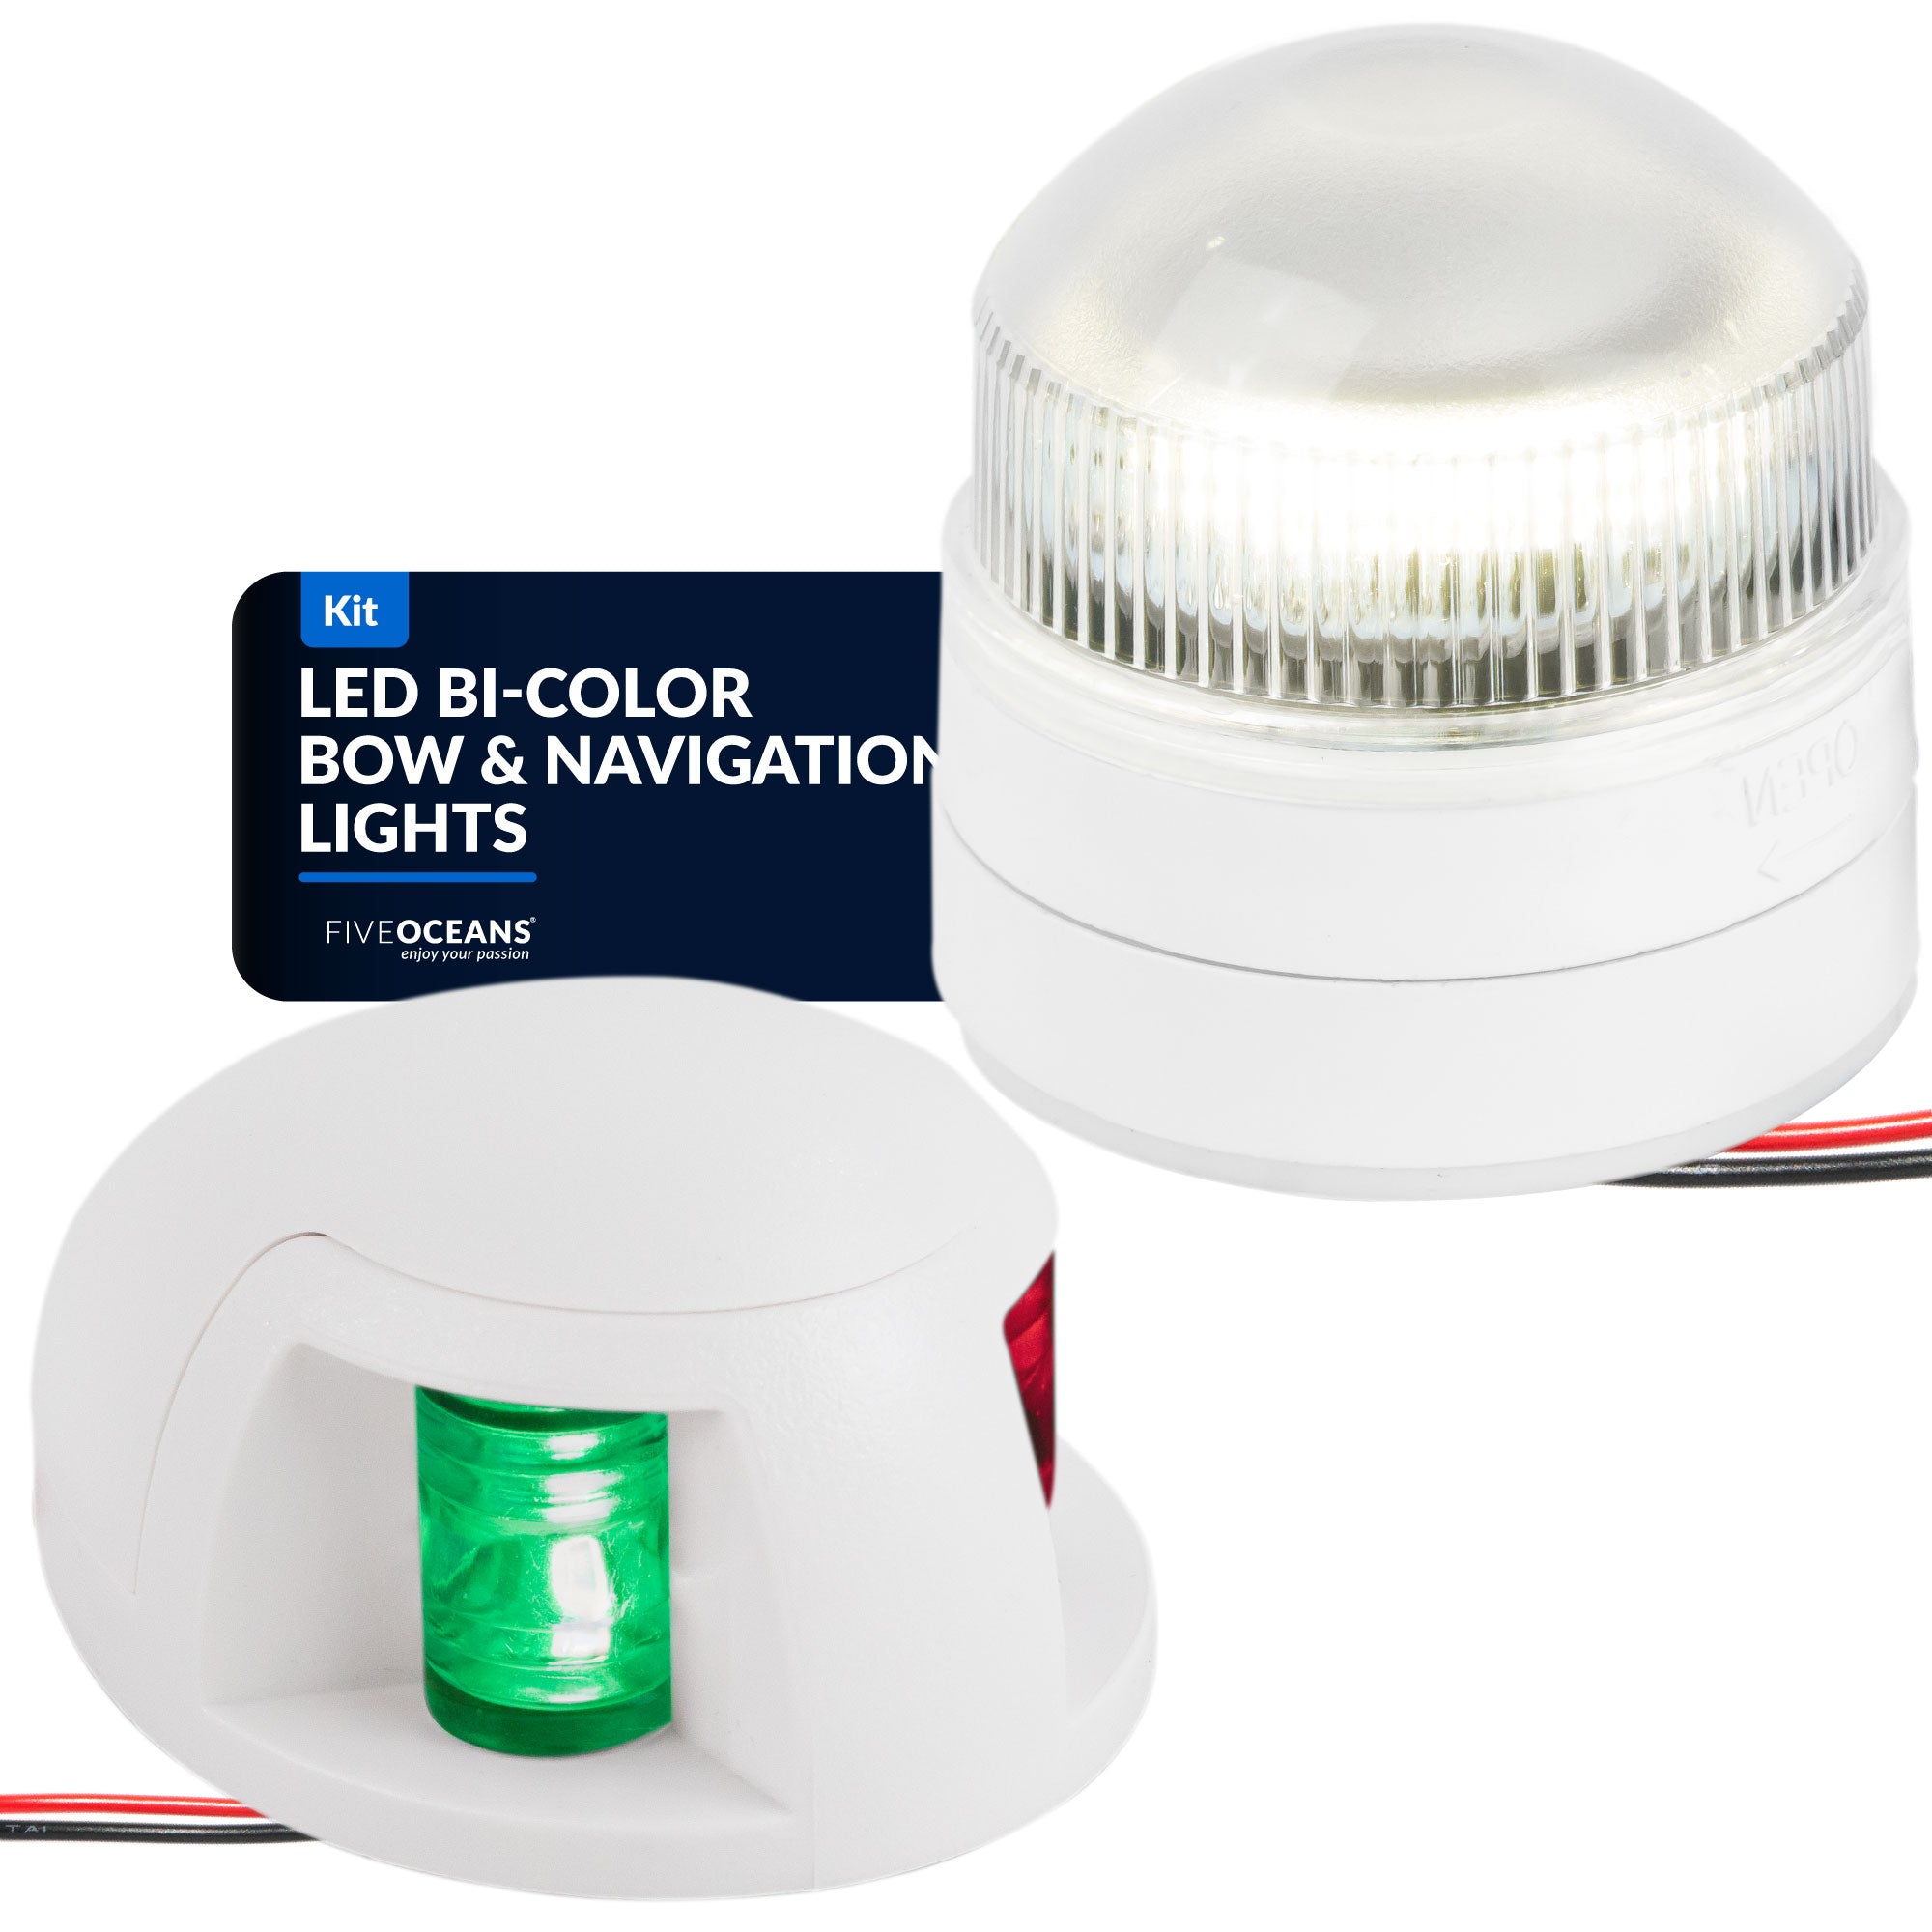 LED Bi-Color Bow and LED Anchor 360 Top Mount Navigation Light set - FO4126-C2